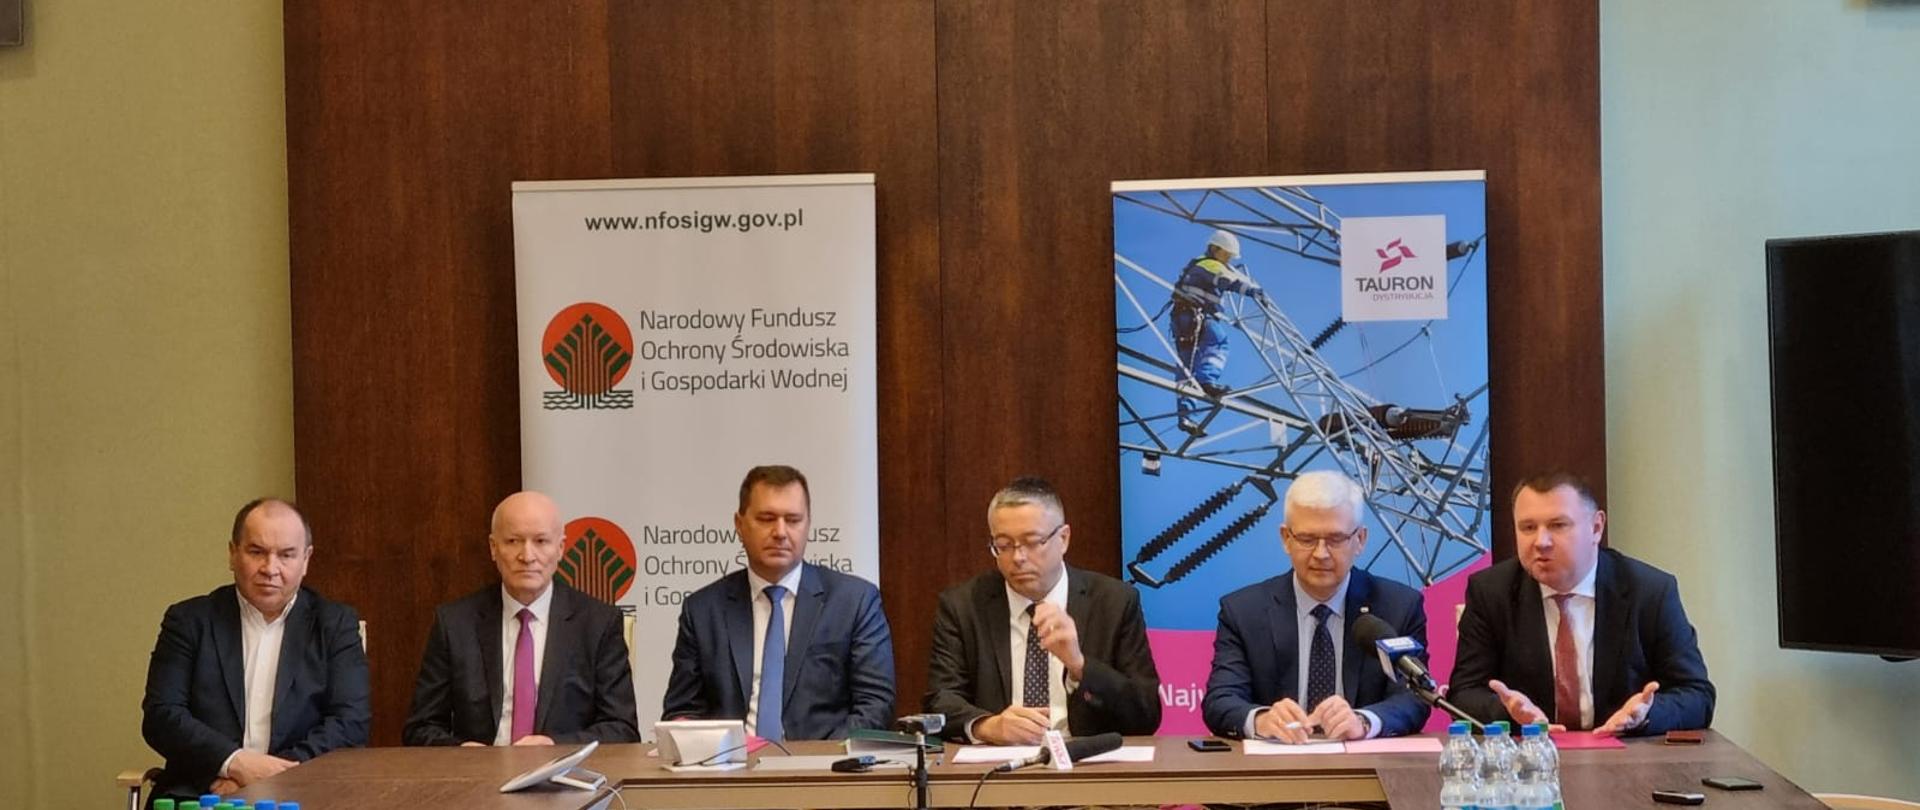 Artur Michalski, zastępca prezesa zarządu NFOŚiGW podczas uroczystego podpisania umowy z Tauron Dystrybucja we Wrocławiu.